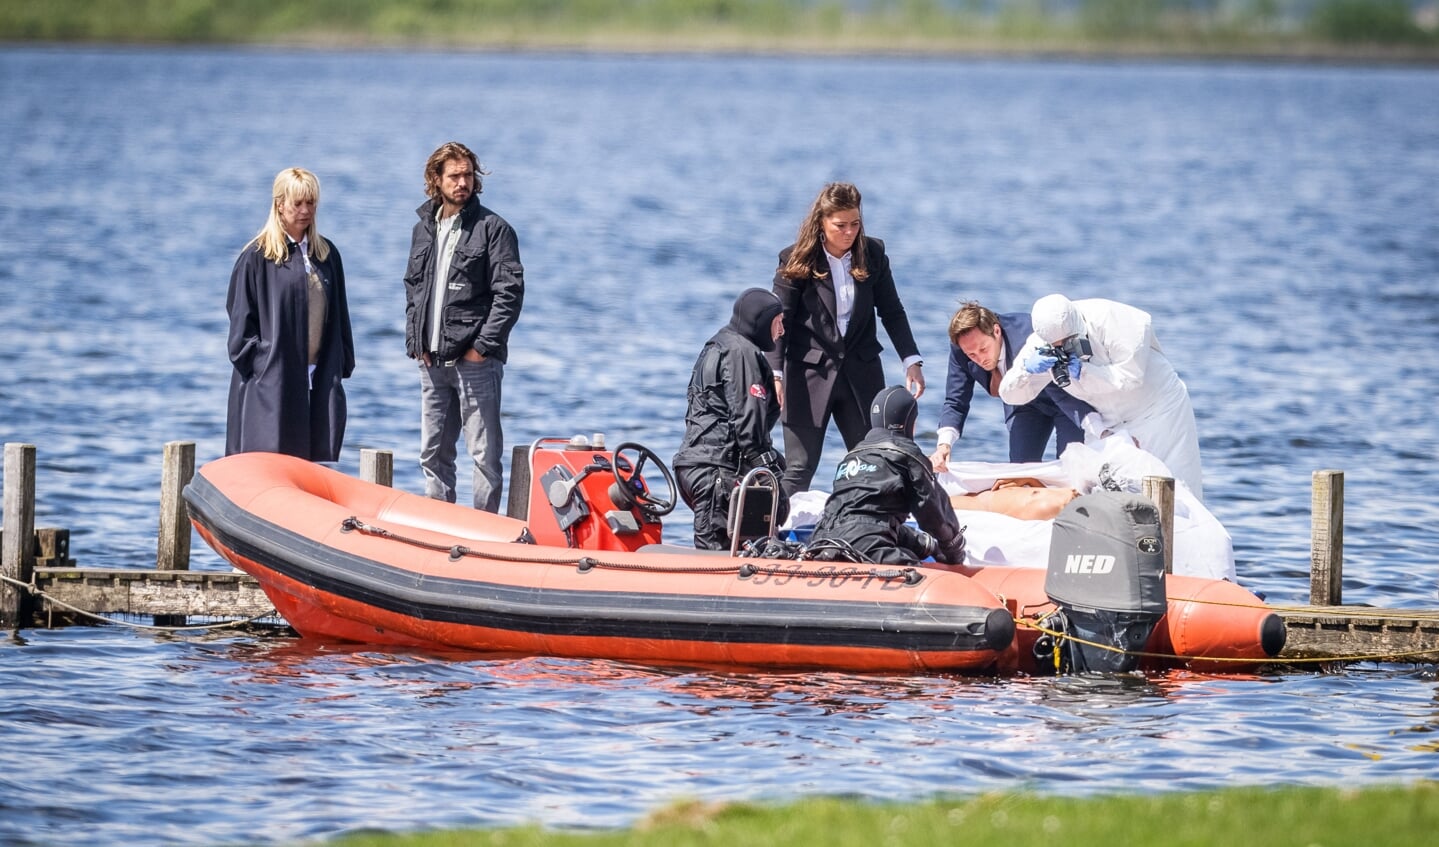 Op 18 mei zijn bij Giethoorn opnames gemaakt voor de tvserie Diepe Gronden. Links kijkt hoofdrolspeler Linda de Mol naar het vermoorde meisje in de boot.